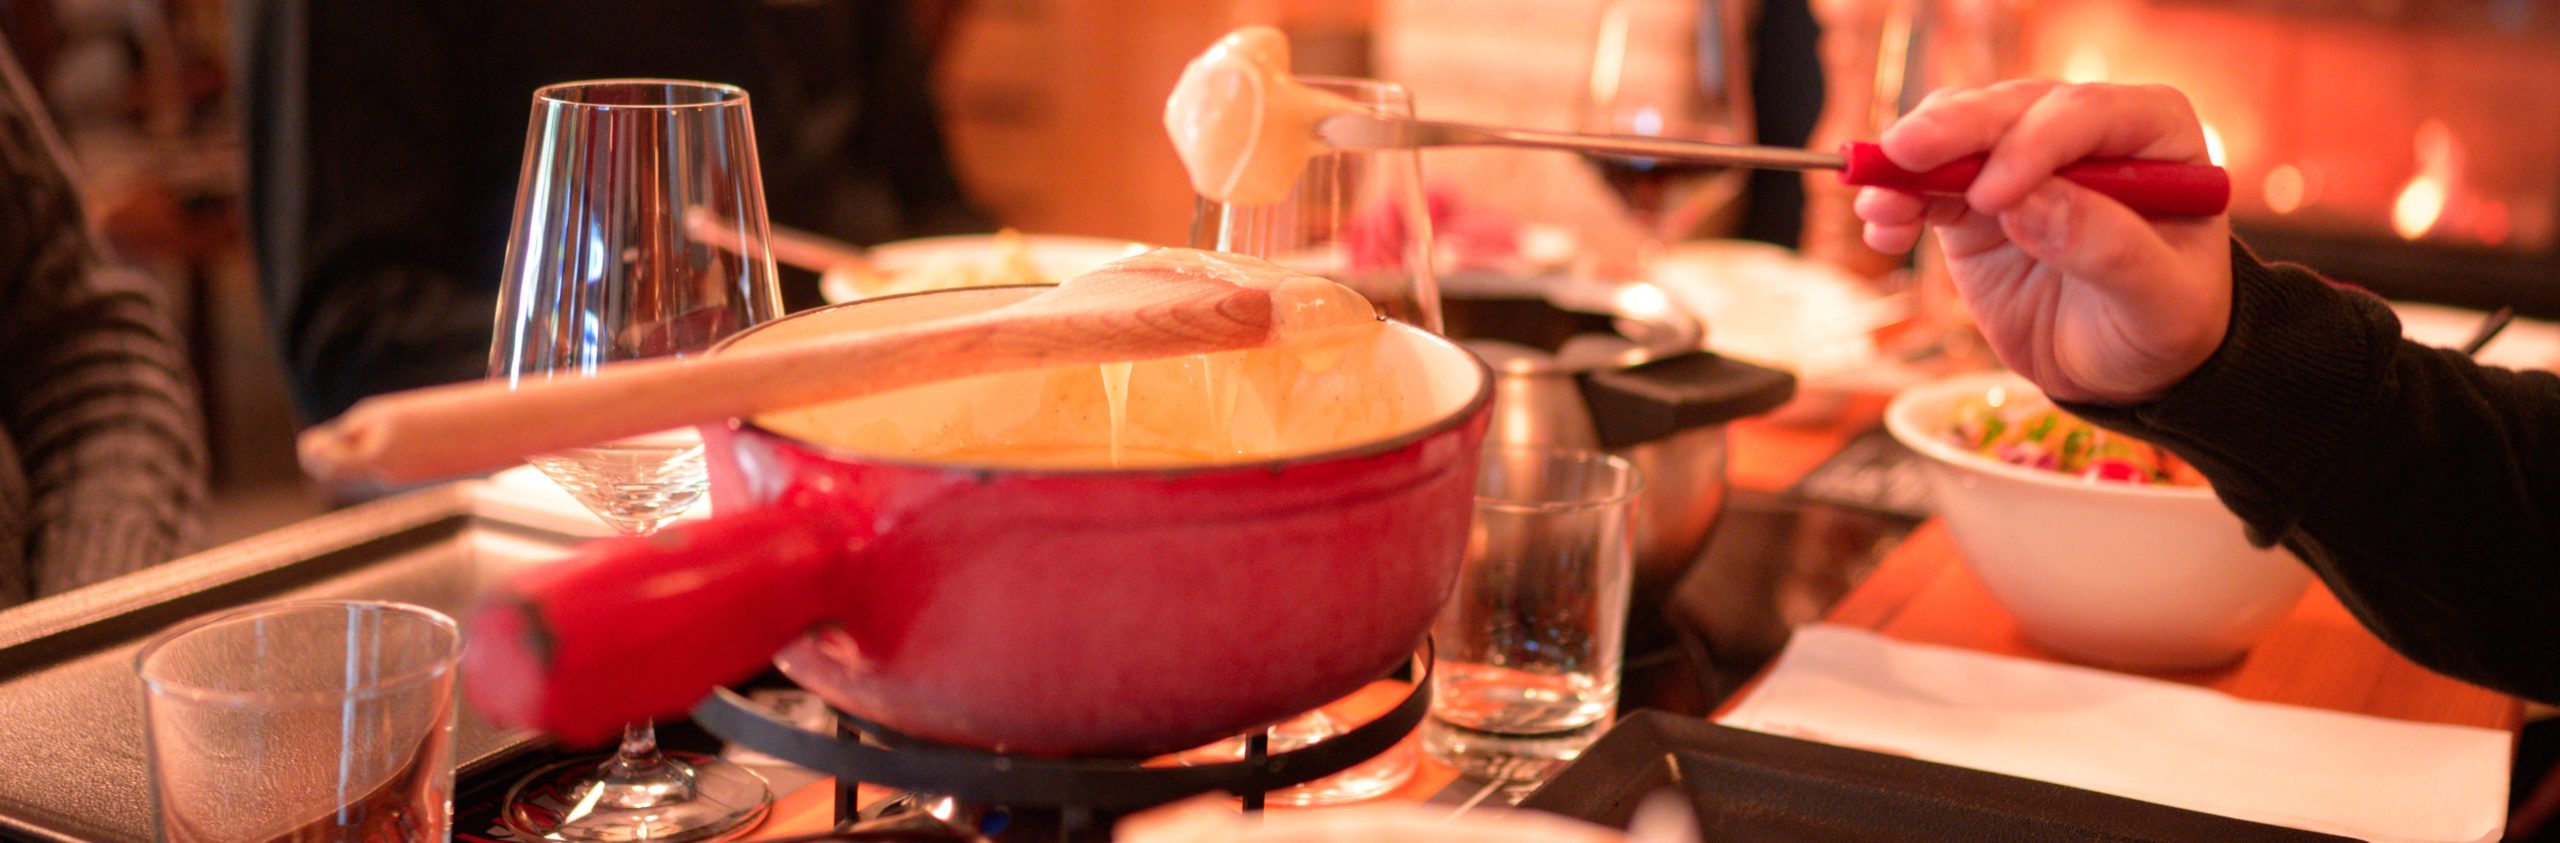 Fondue au chocolat - Recette Raclettes fondues pierrades